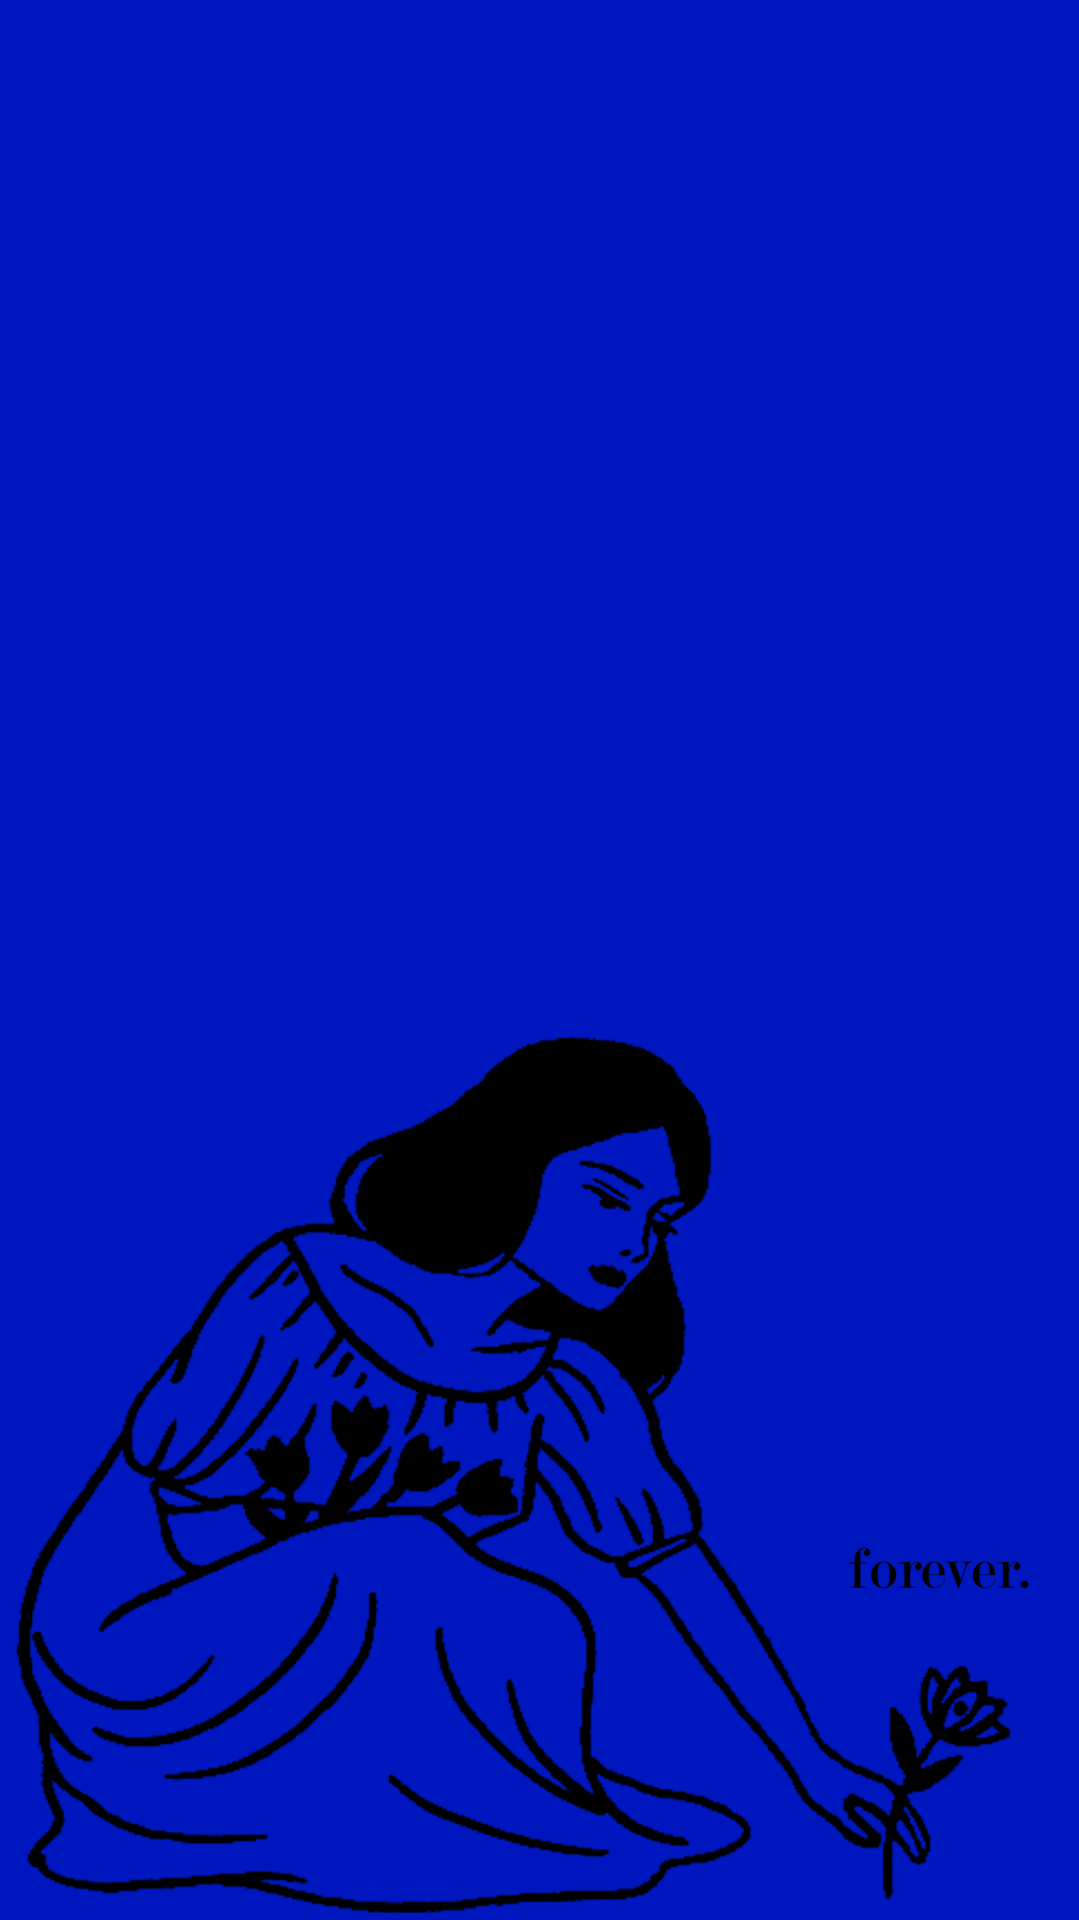 1079x1920 Hình nền Tumblr thẩm mỹ màu xanh đậm 1079 × 1920